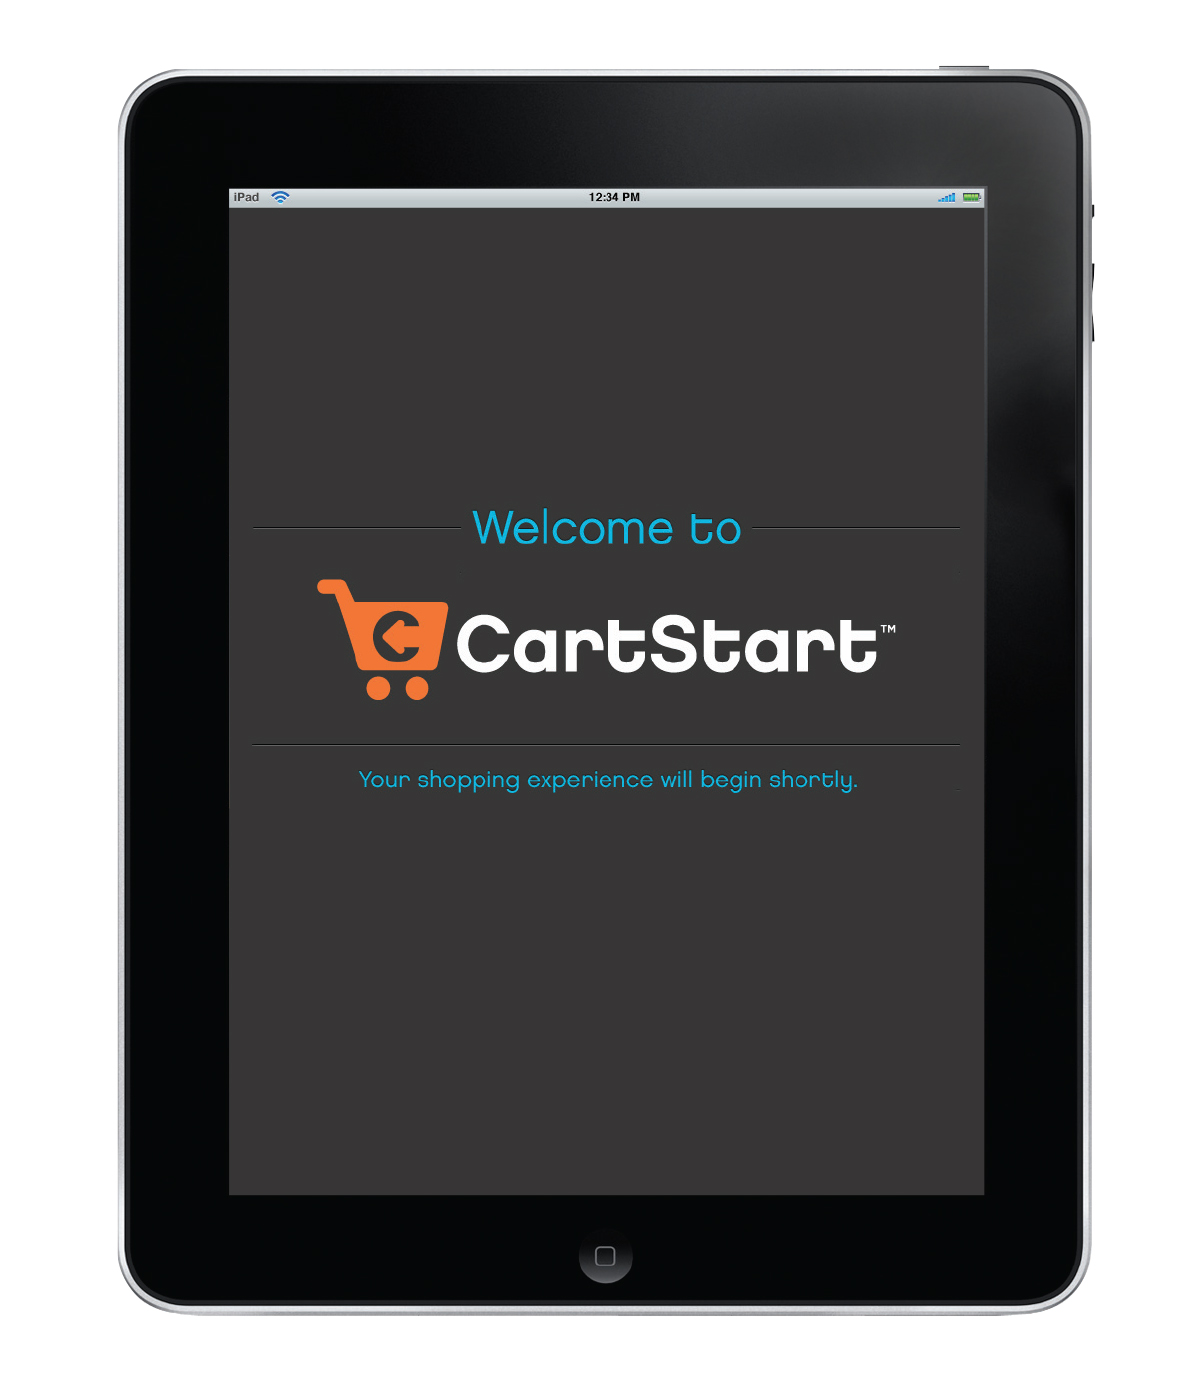 CartStart